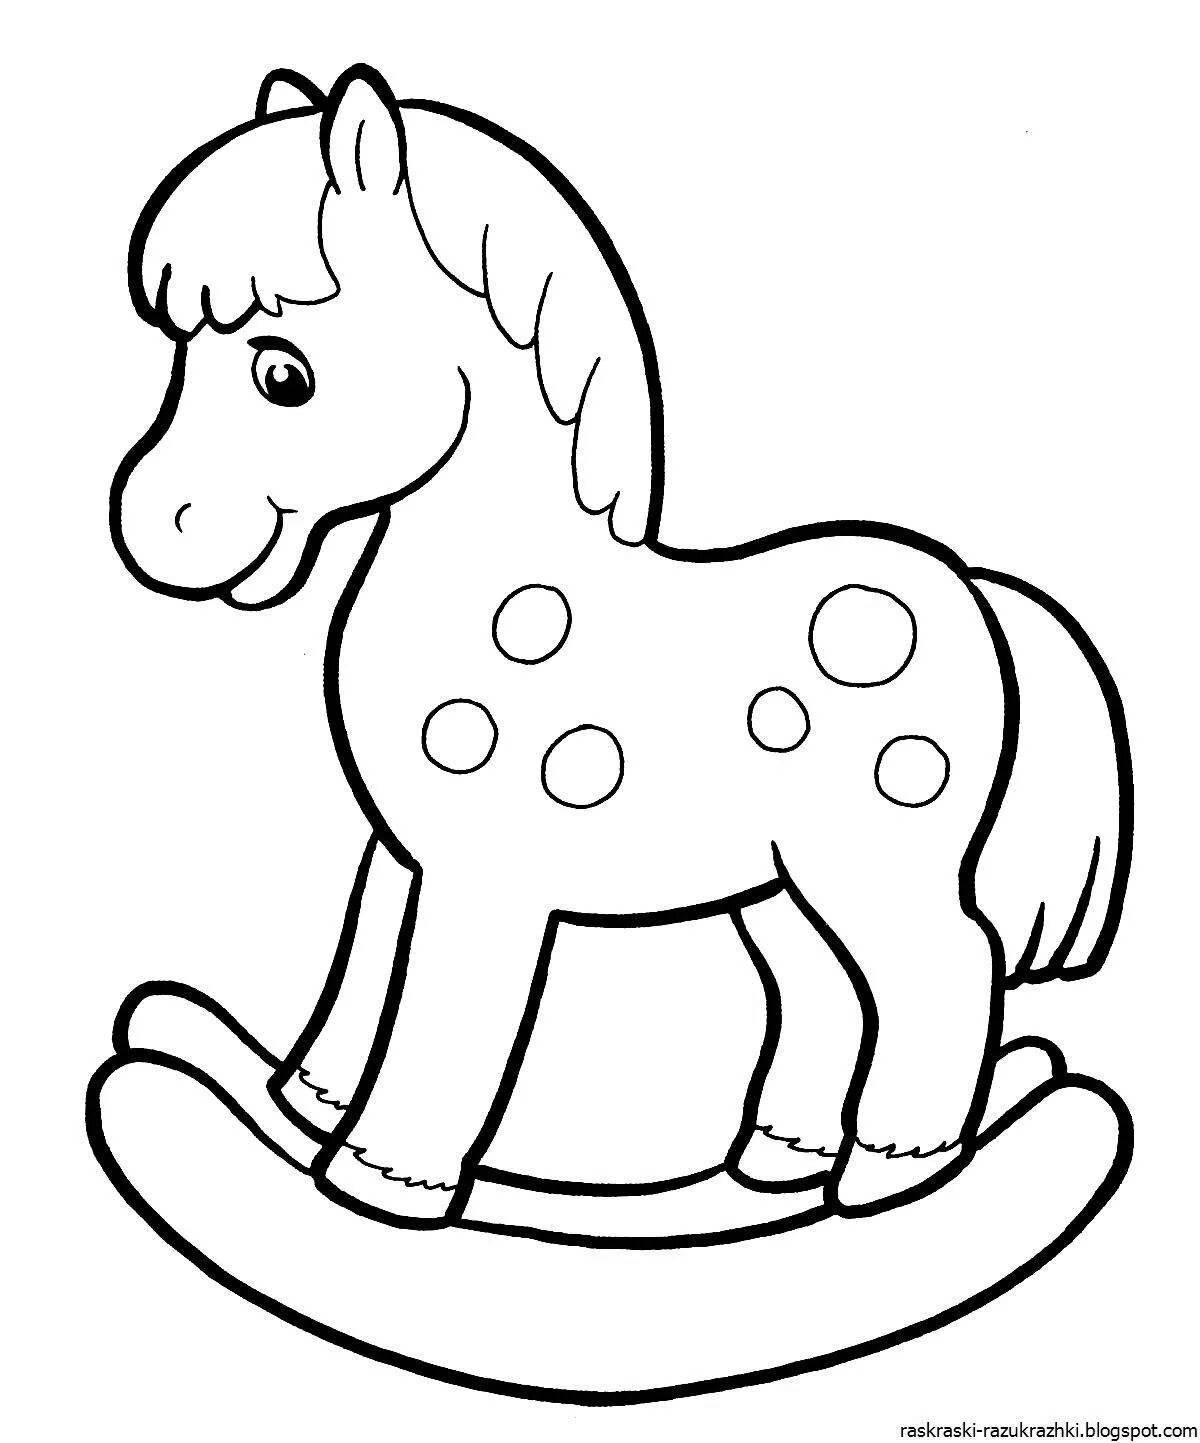 Величественная раскраска лошадь для детей 2-3 лет